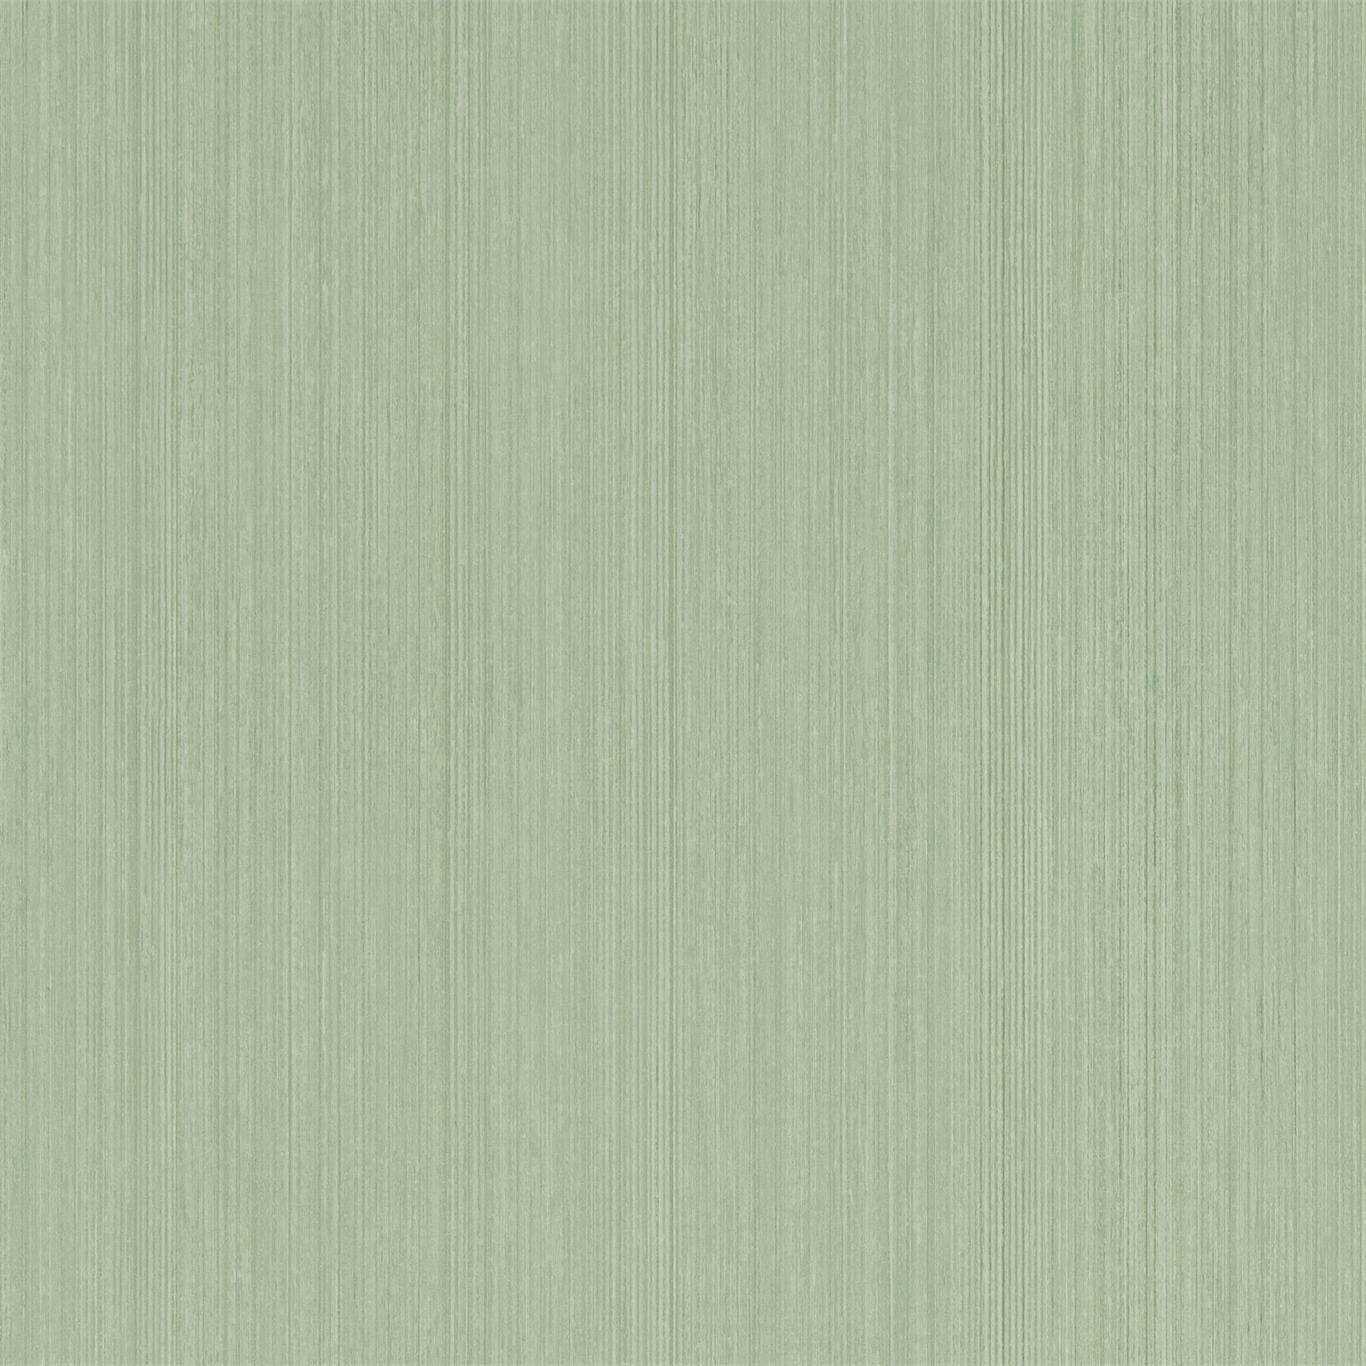 Osney Leaf Green Wallpaper DLMW216892 by Sanderson